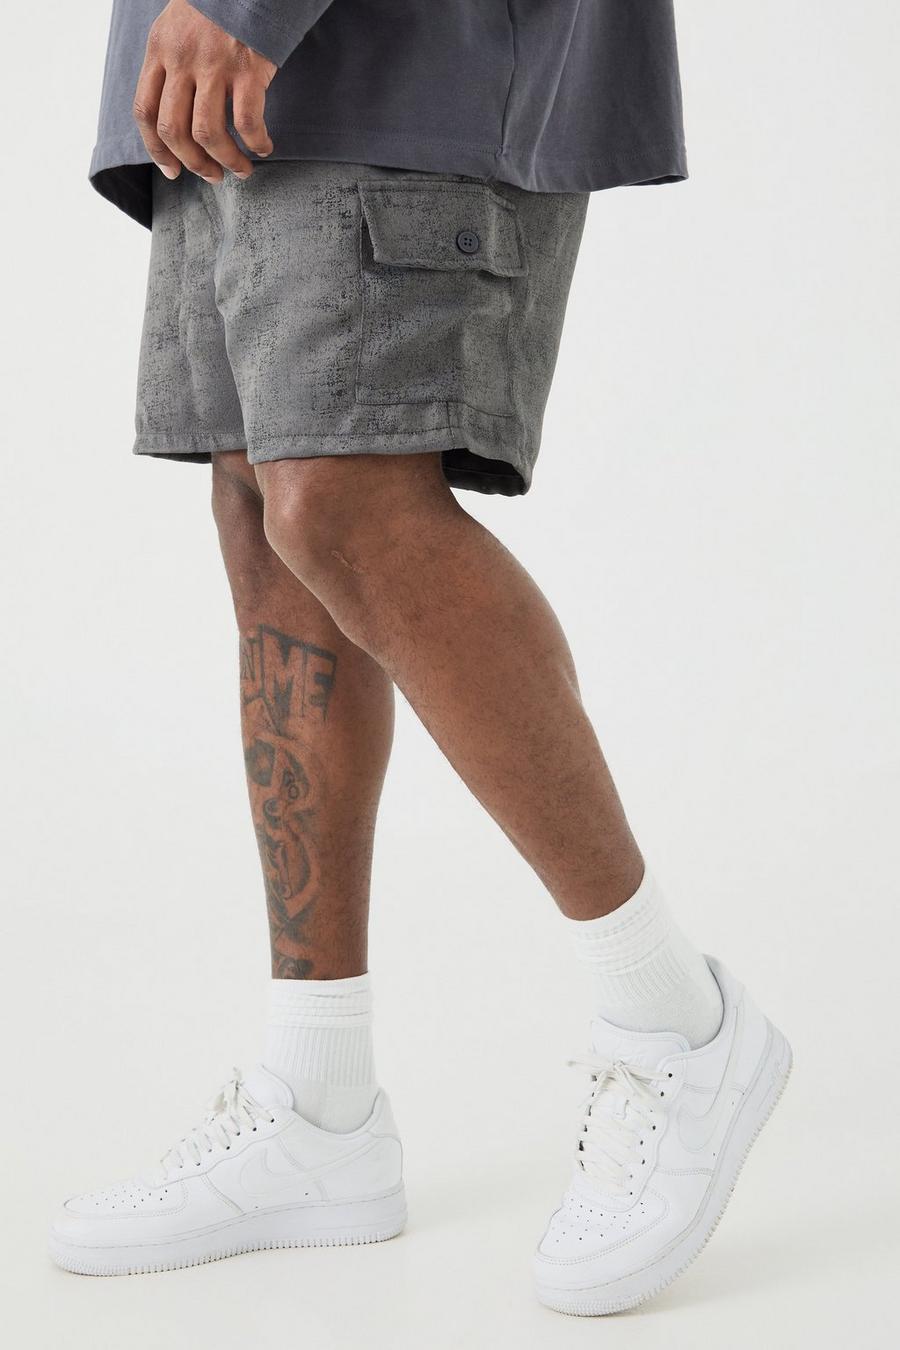 Pantalón corto Plus cargo texturizado con cintura elástica en color carbón, Charcoal